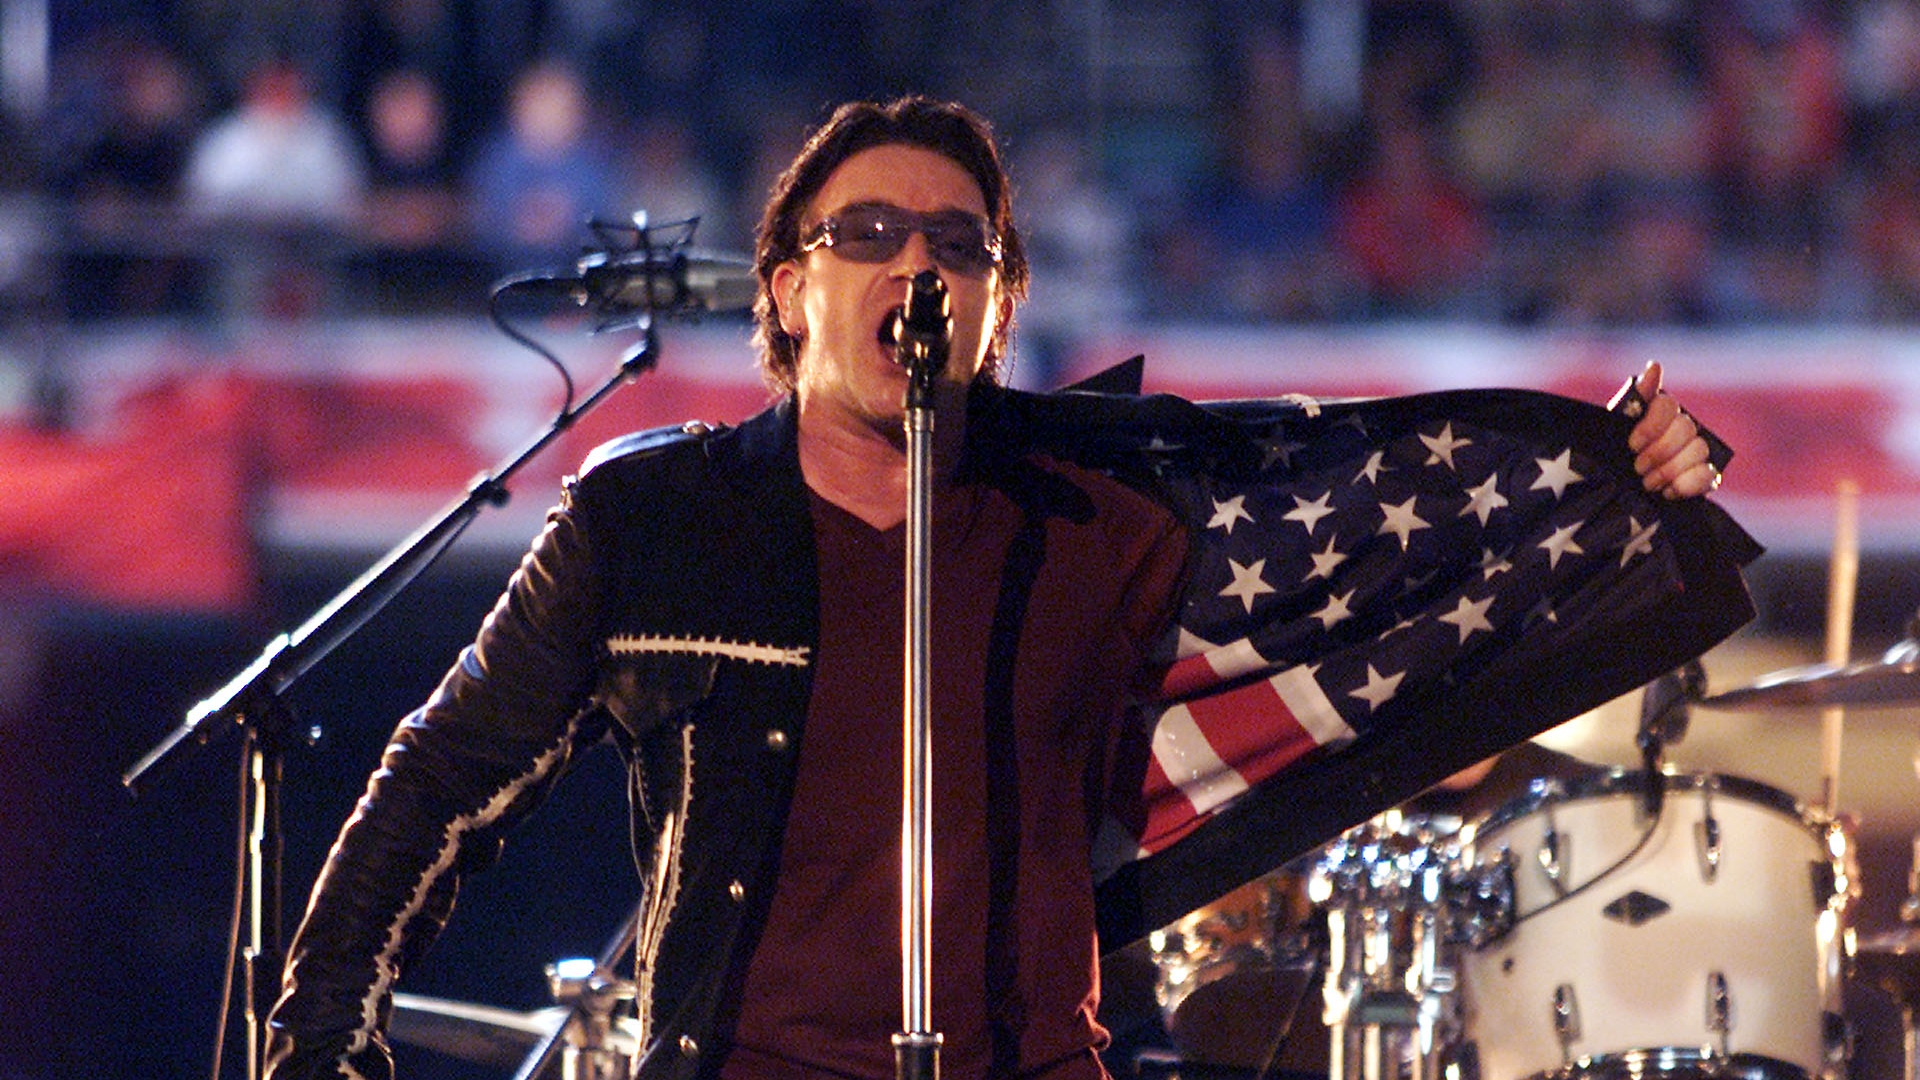 En 2002, U2 ofreció una presentación que trascendió el entretenimiento. Con piezas como ‘Beautiful Day’ y ‘Where the Streets have no name’, la banda capturó el sentir de una nación que acababa de sufrir los ataques terroristas del 11 de septiembre.